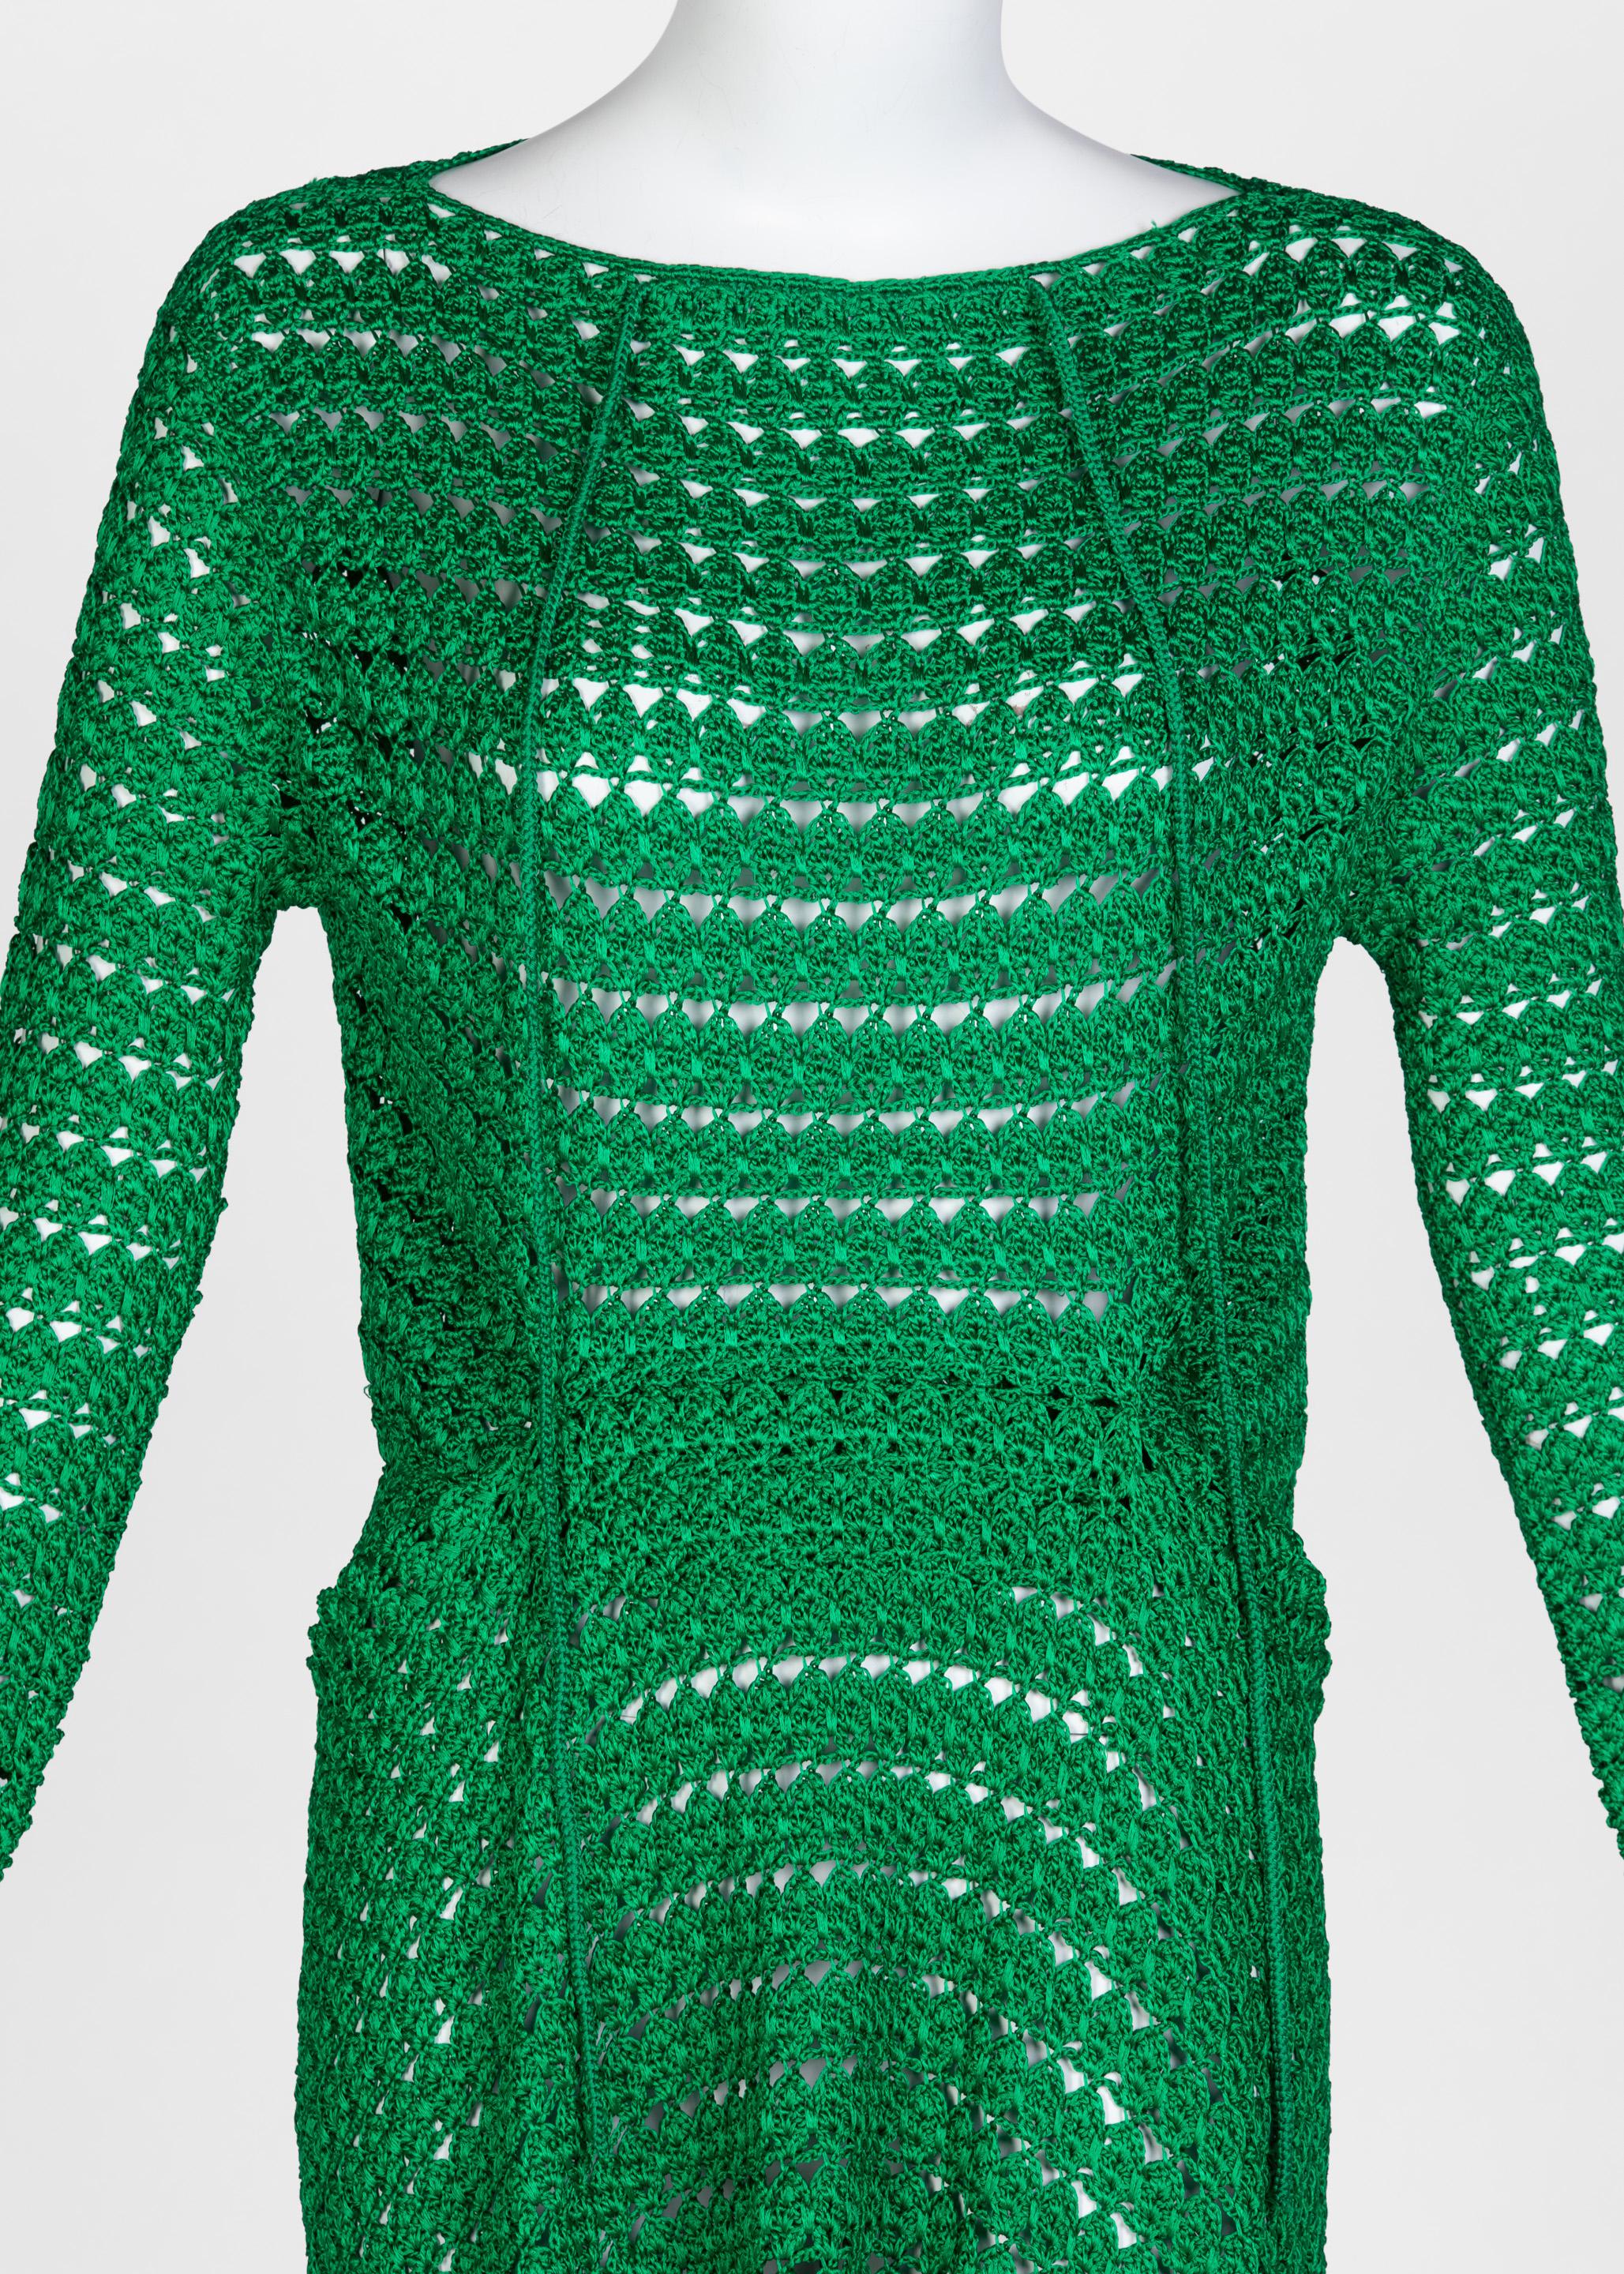 Smaragdgrünes gehäkeltes Kleid von Balenciaga, 2017 Herren im Angebot